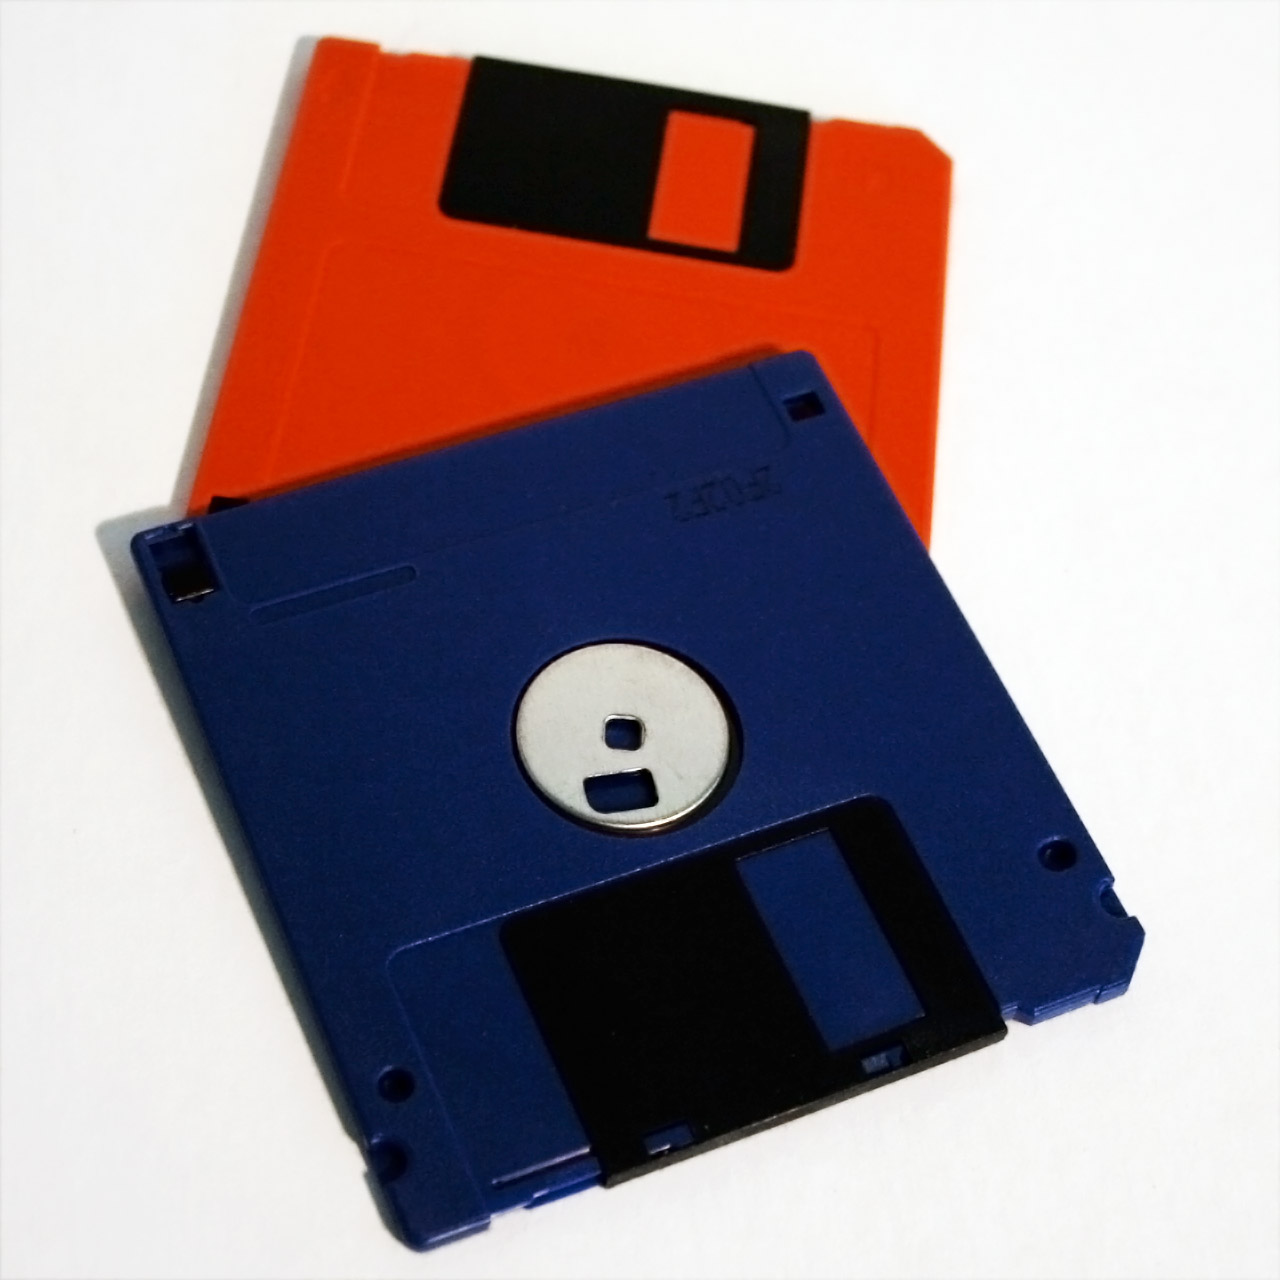 Floppy Disk Image File